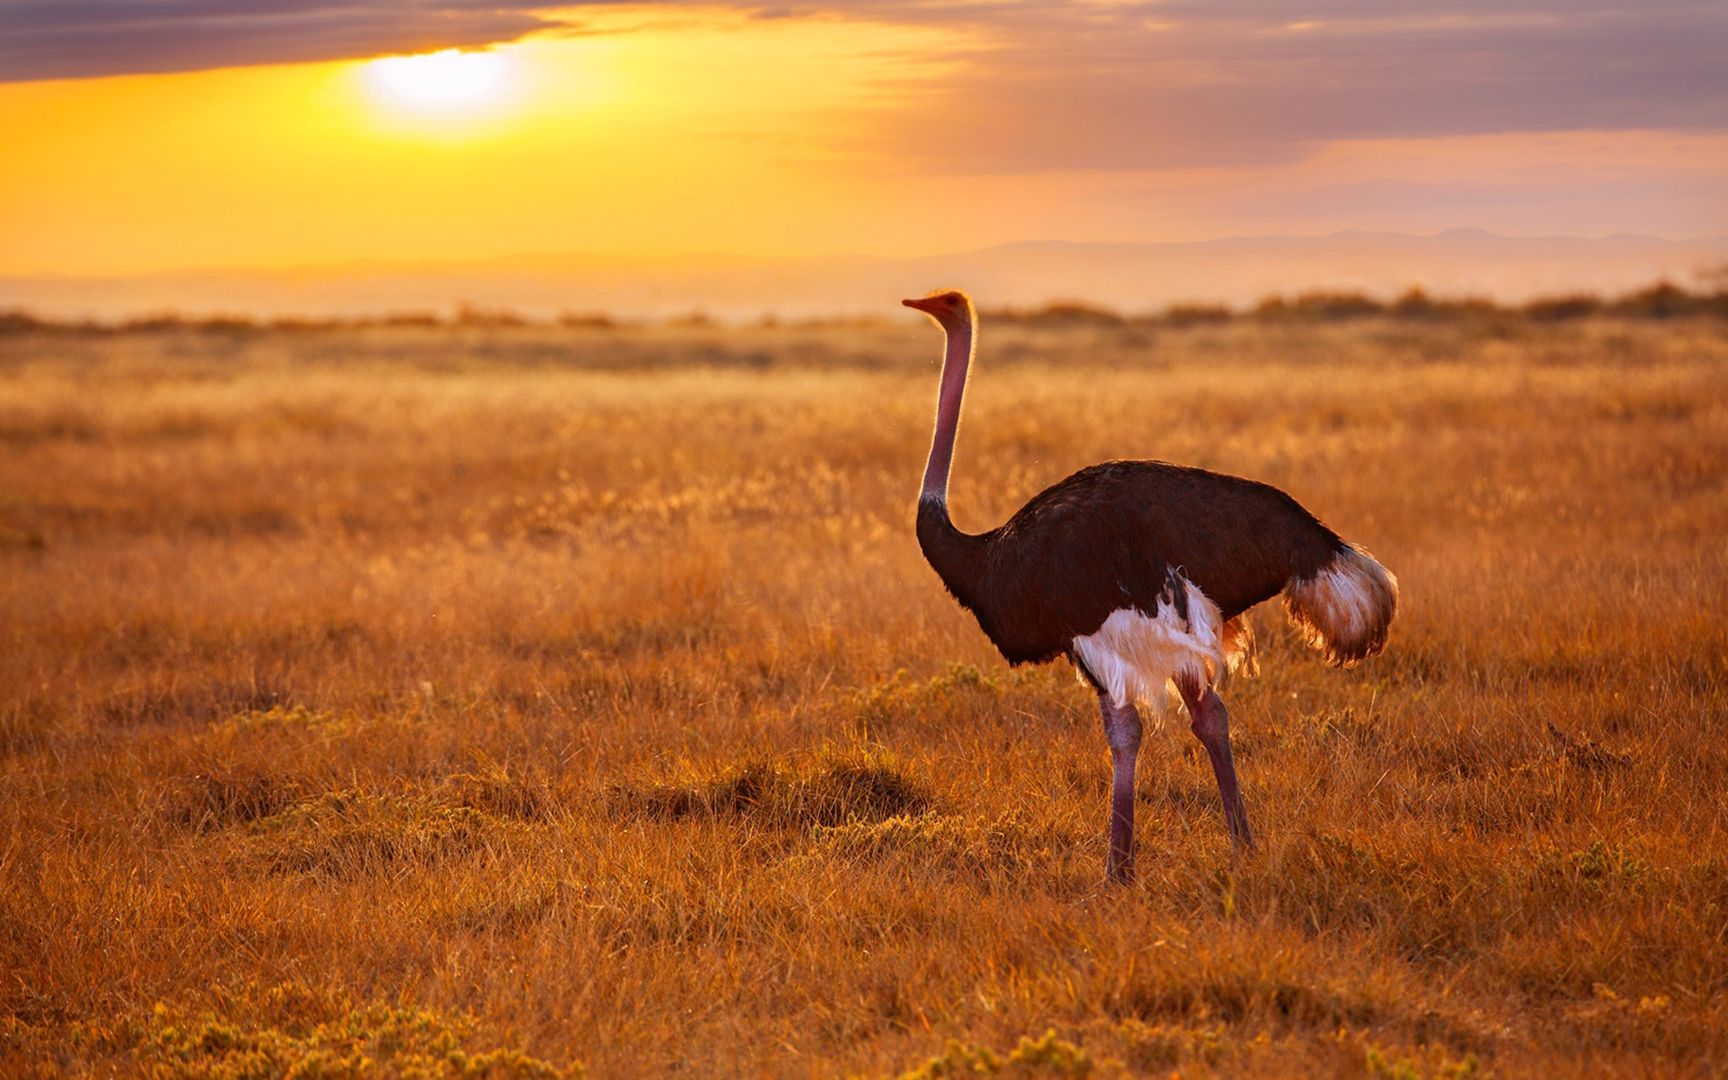 夕阳西下非洲大草原无数生灵自由自在唯美大图